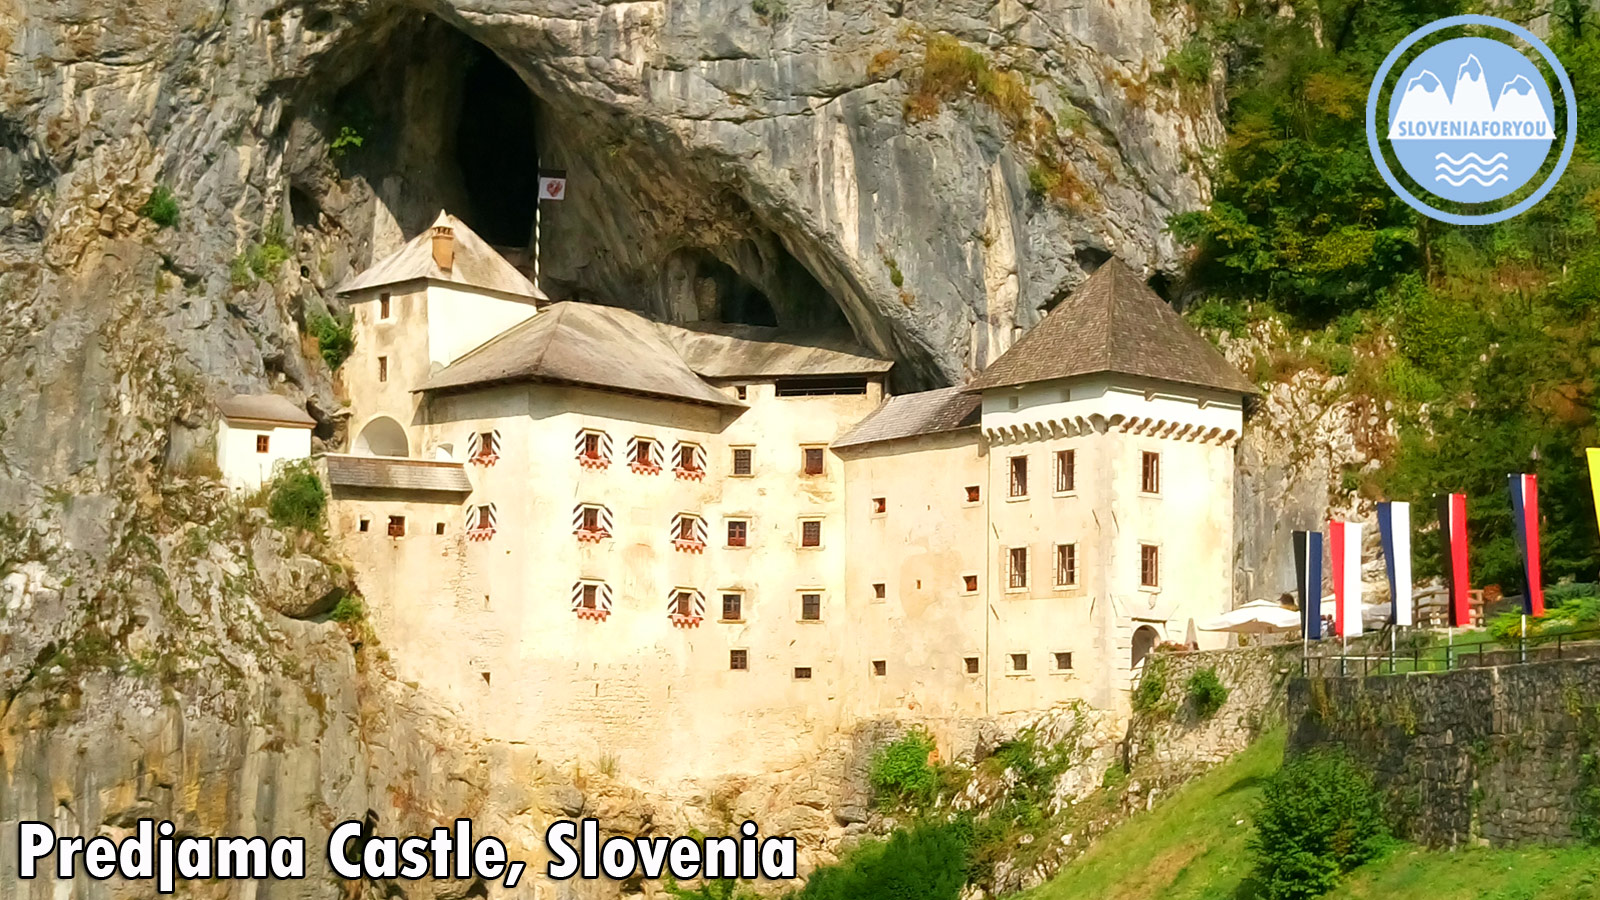 Tour the amazing Predjama Castle_Sloveniaforyou